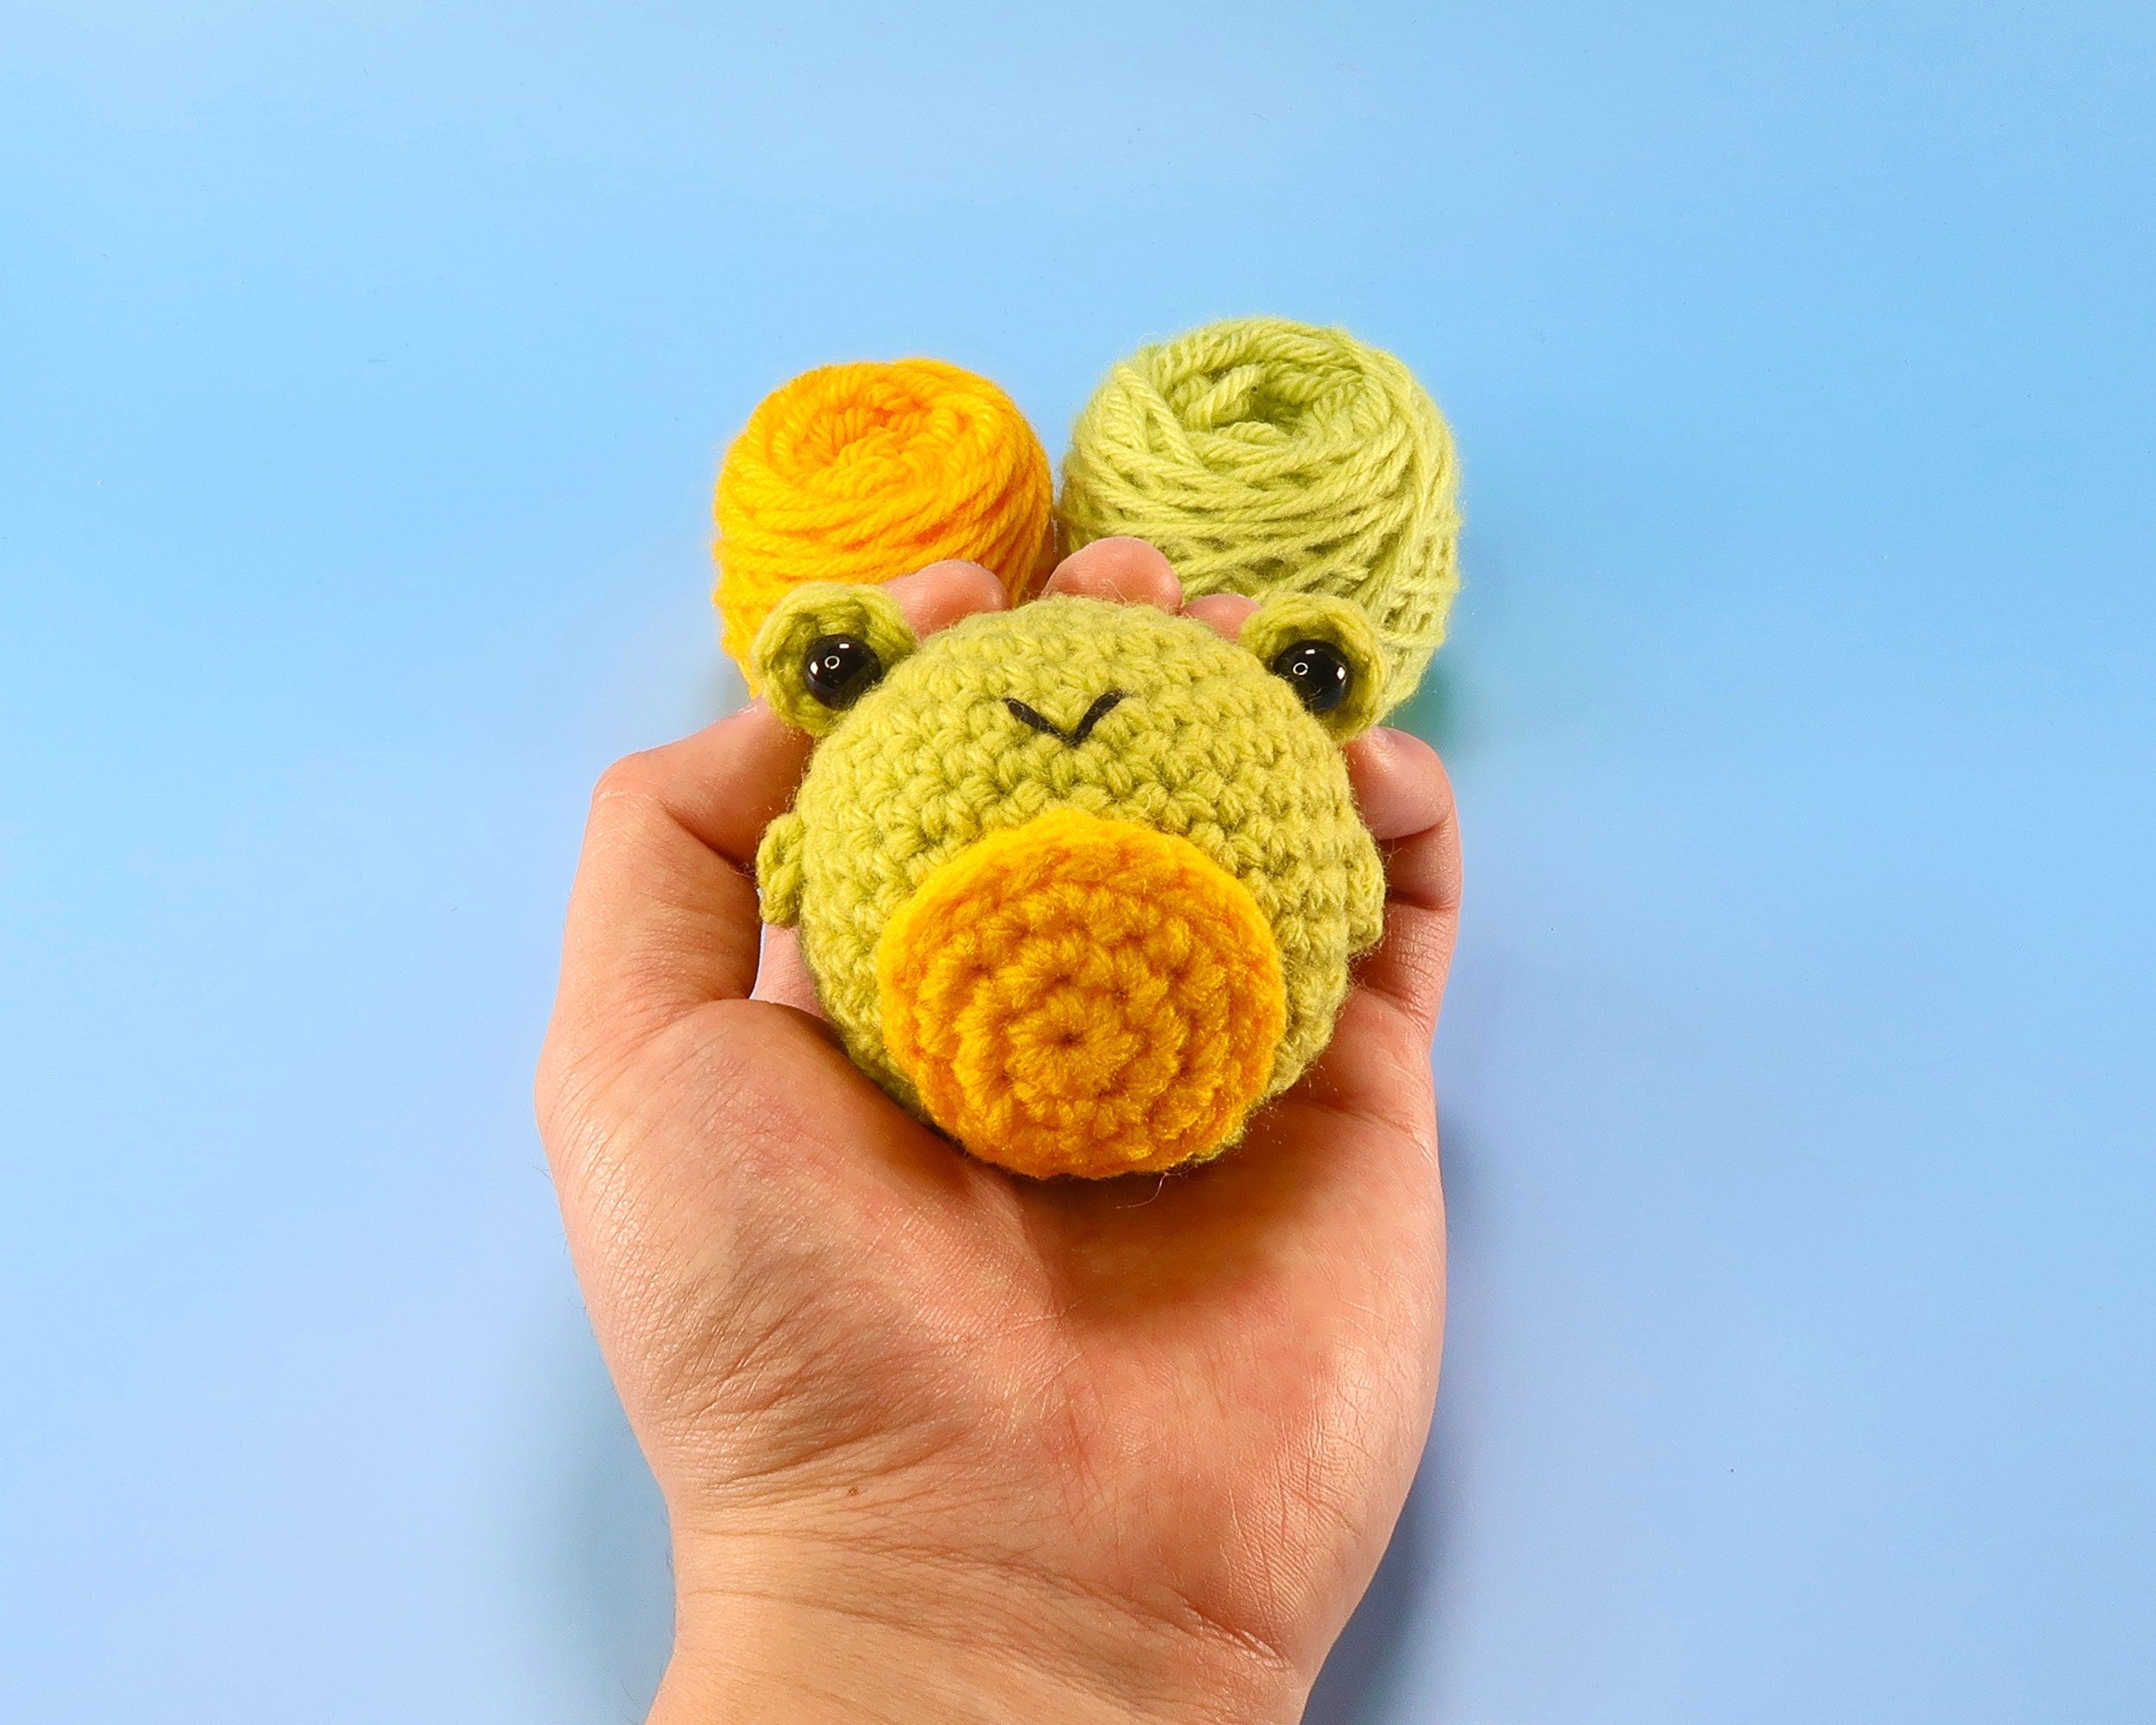 Crochet Kit for Beginners, 3PCS Crocheting Animal Kit for FrogPenguinOwl